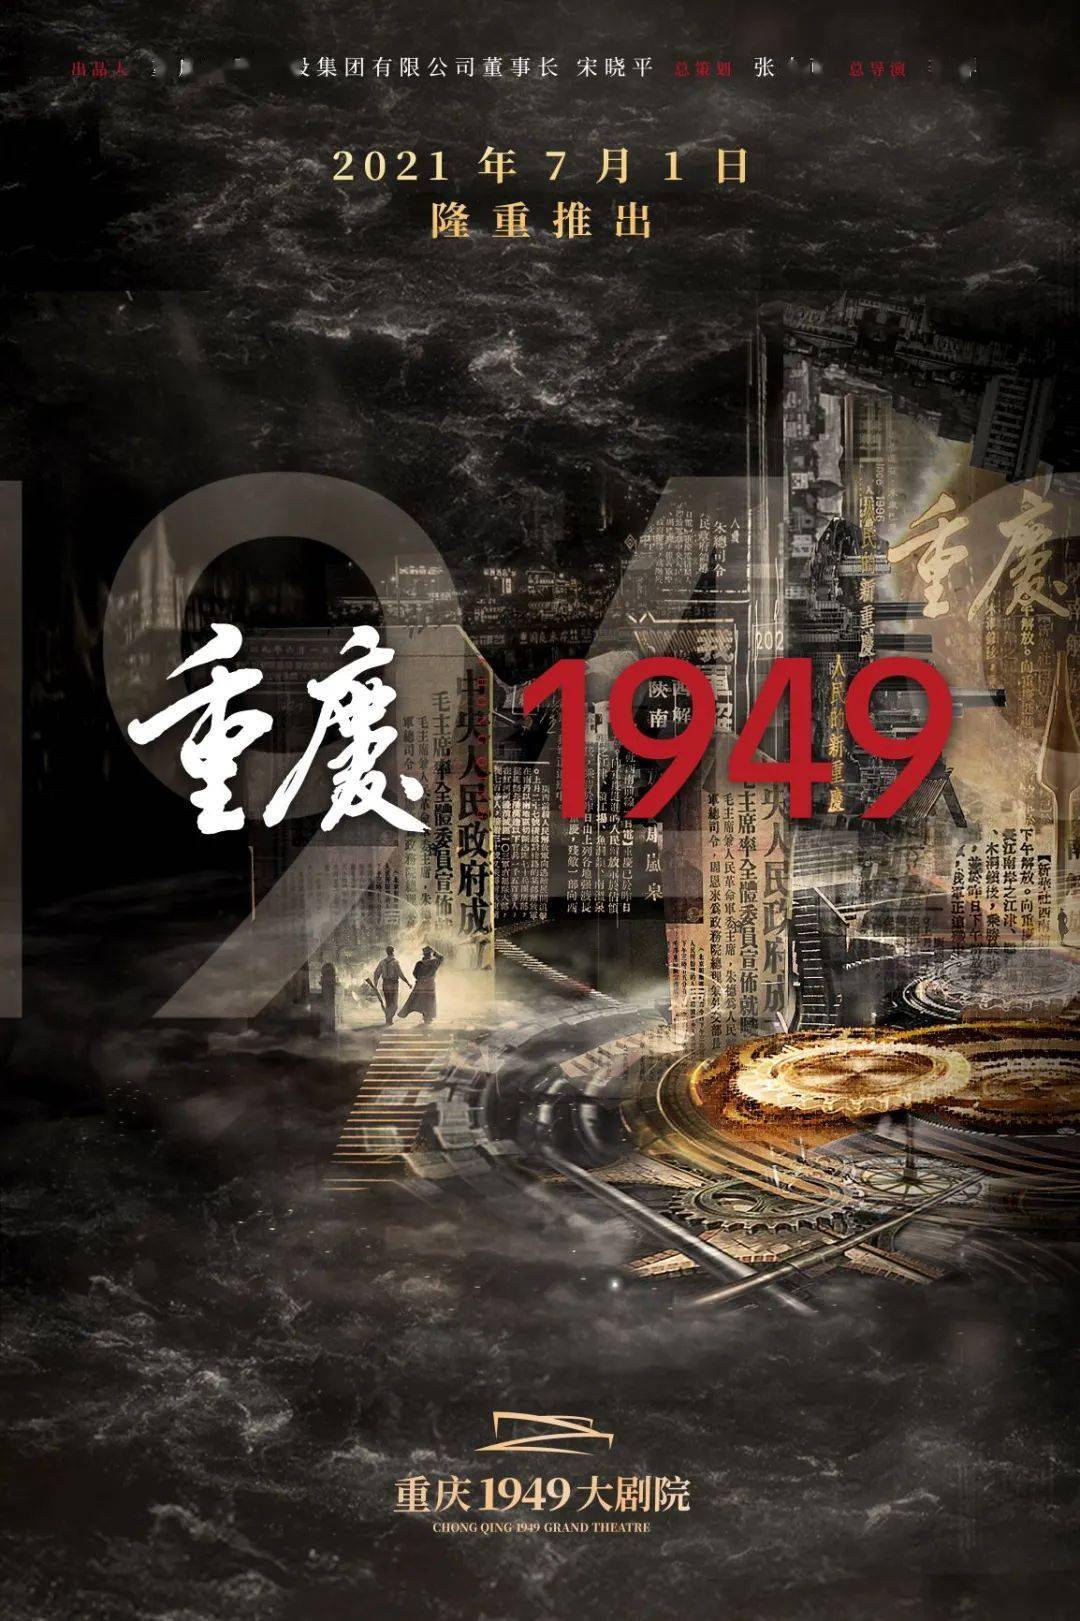 在中国共产党成立100周年之际,大型红色历史舞台剧《重庆·1949》将